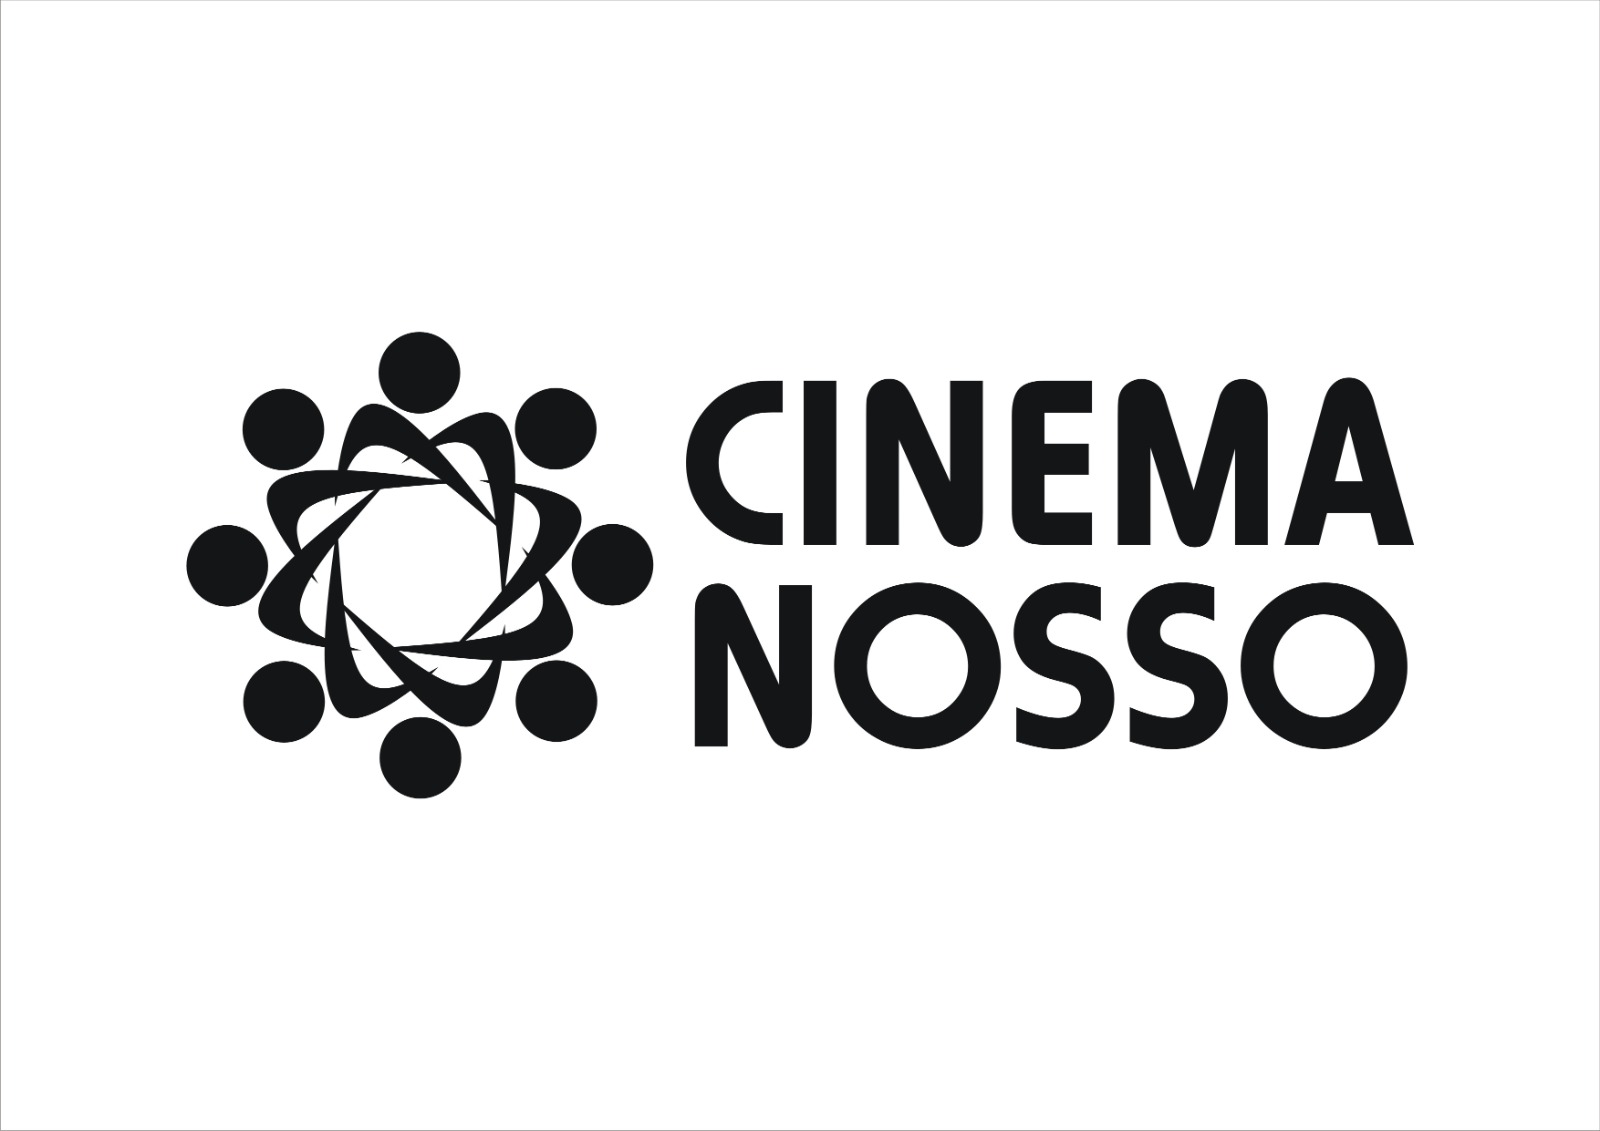 Cinema Nosso